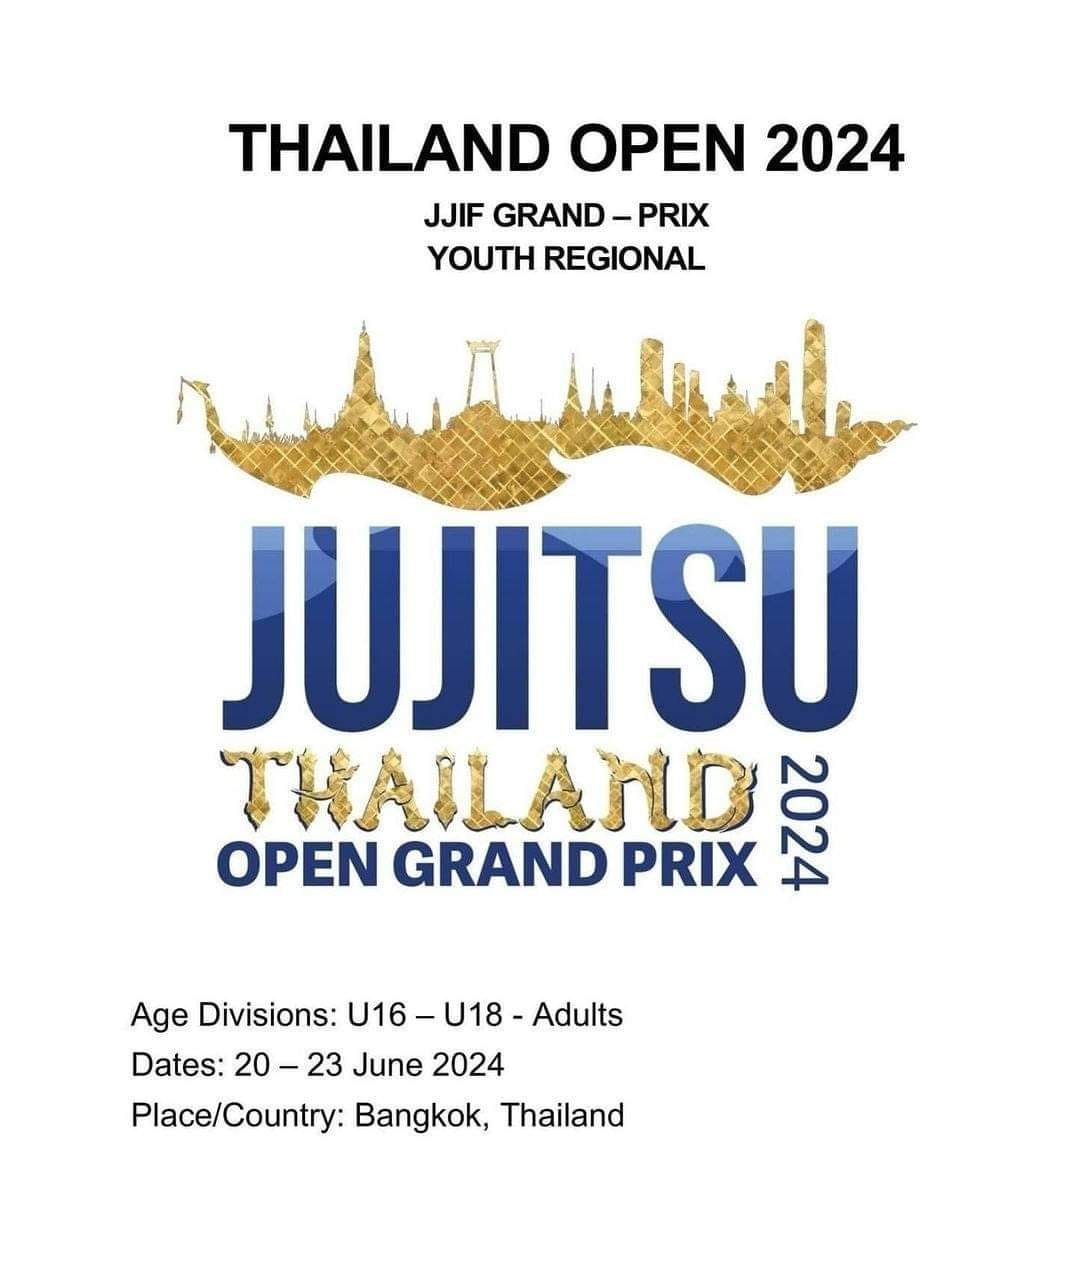 ยินดีกับน้องๆทั้ง 7 คน ที่ติดทีมชาติไทย ก้าวสู่การแข่งขัน Thailand Open Grand Prix 2024